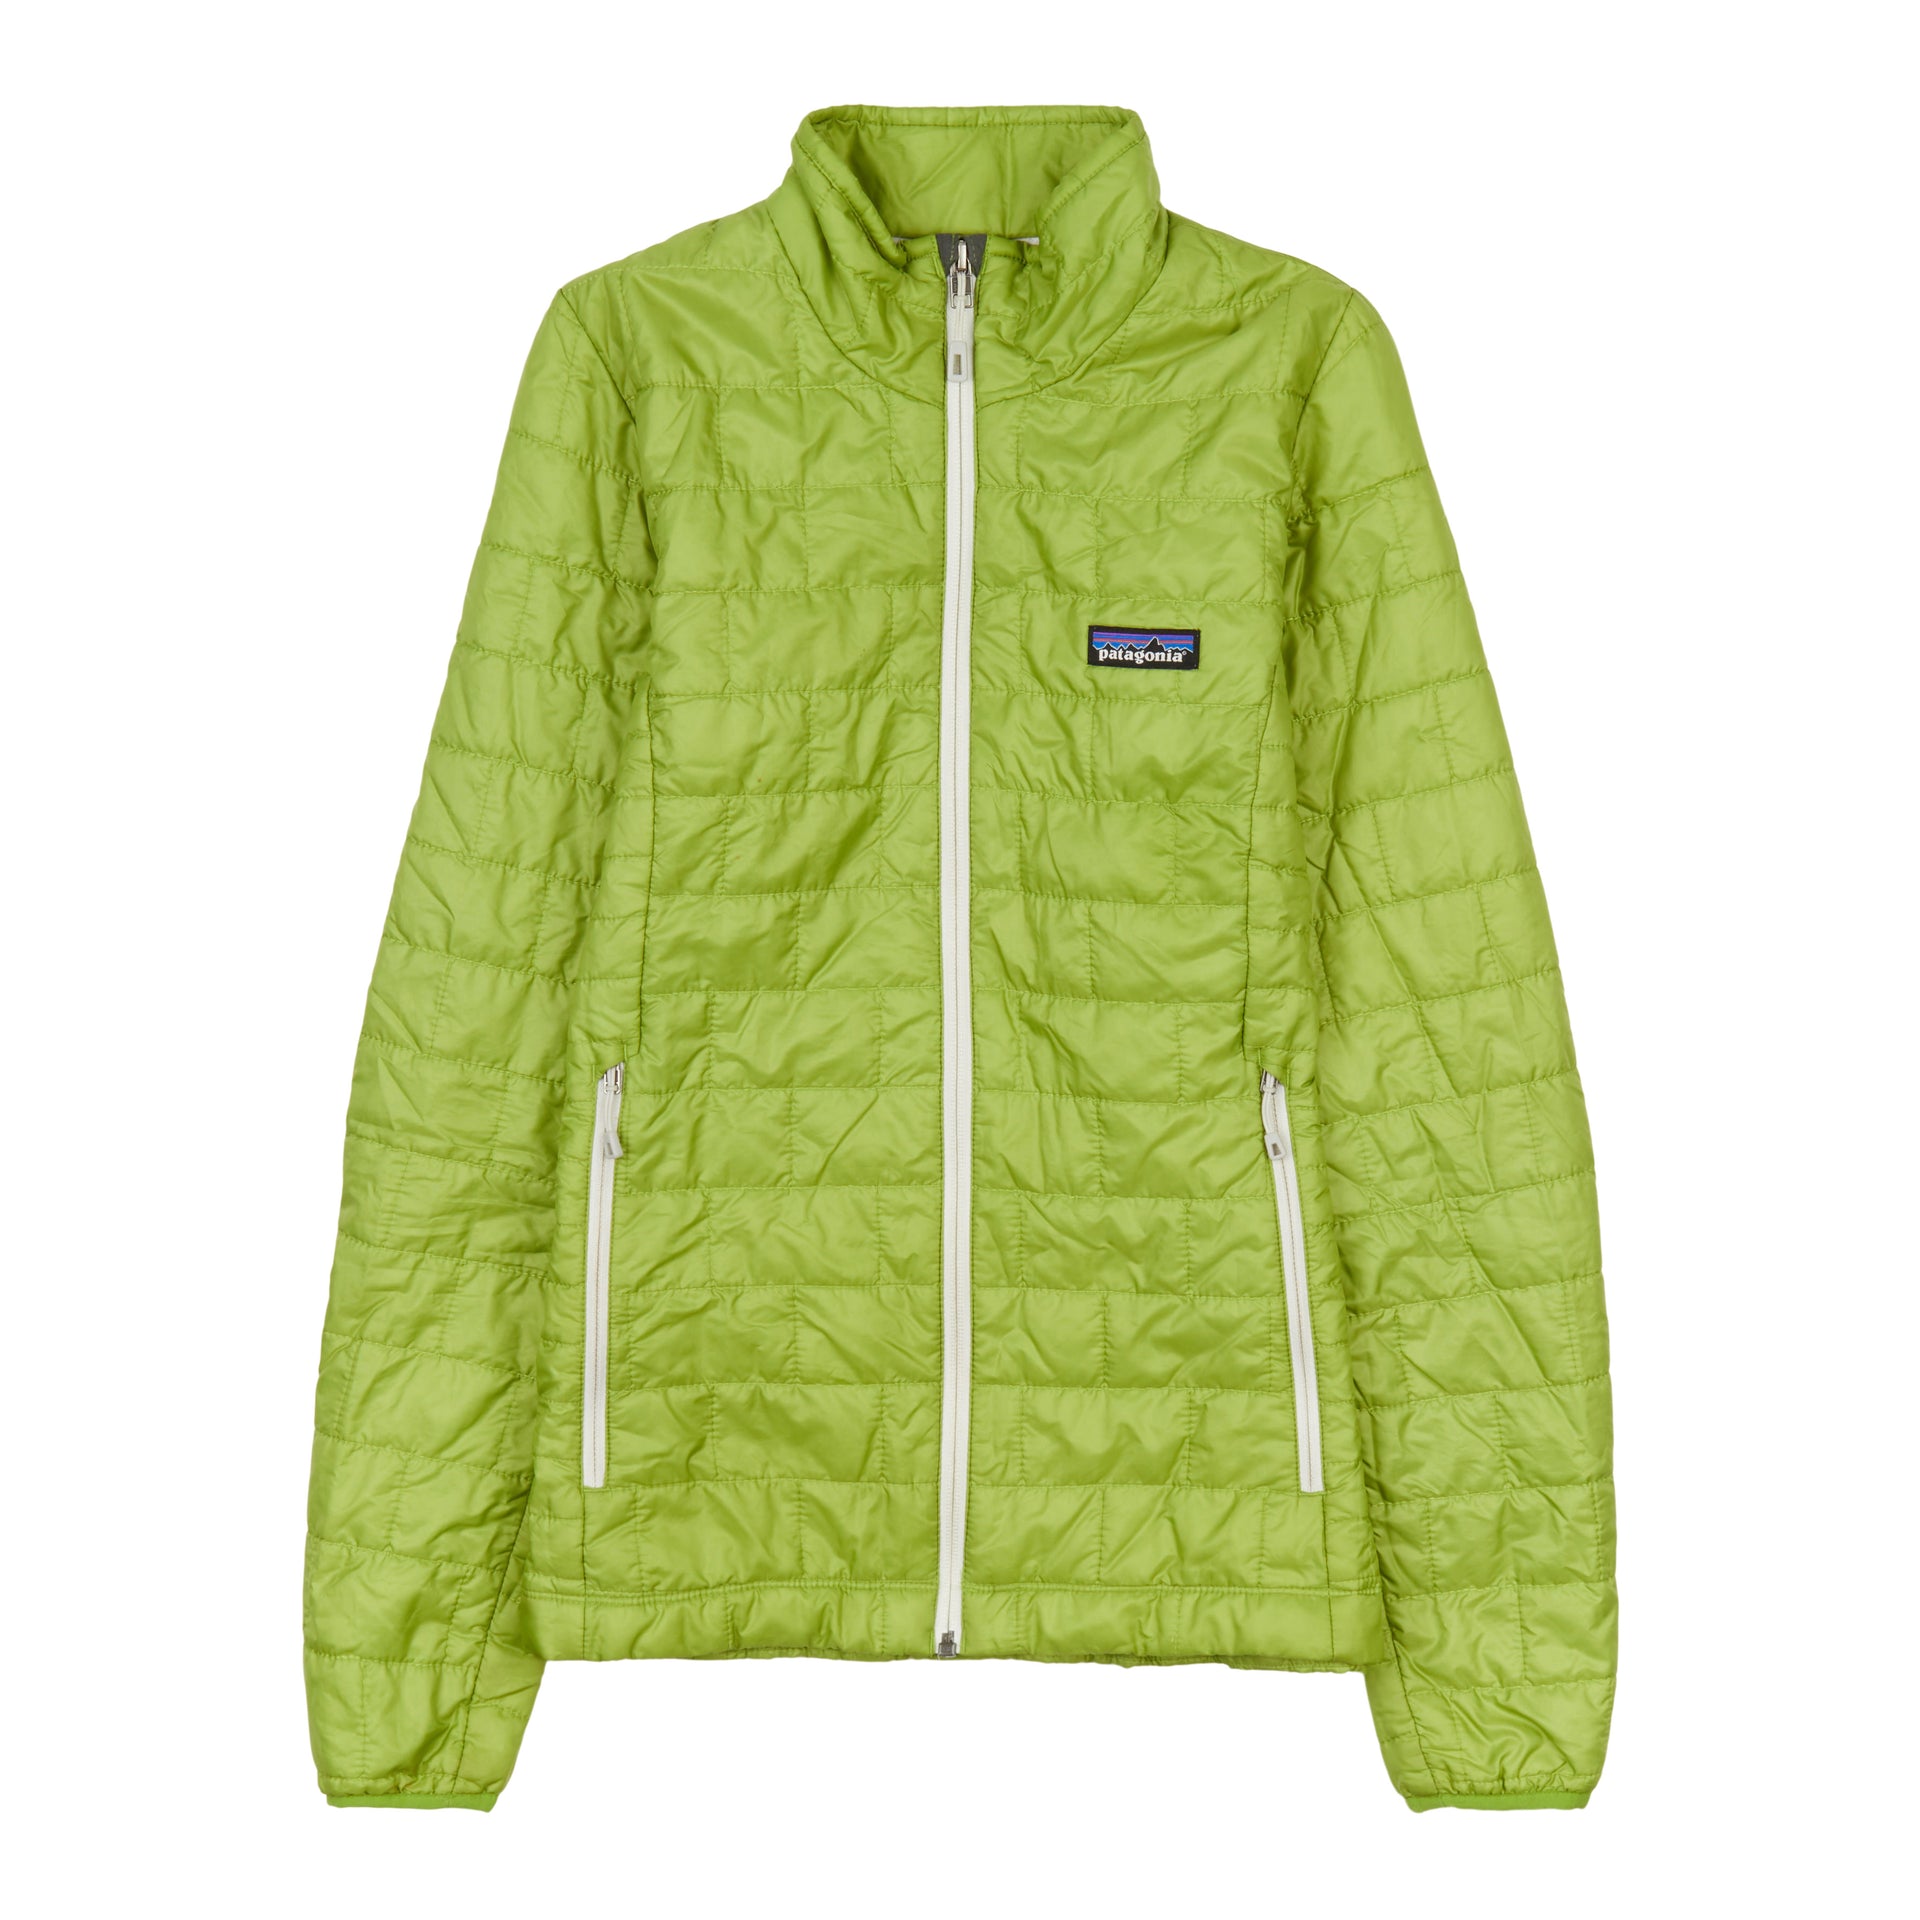 Patagonia Nano Puff Nouveau Green W/Nouveau Green Jacket Women's Size XS New